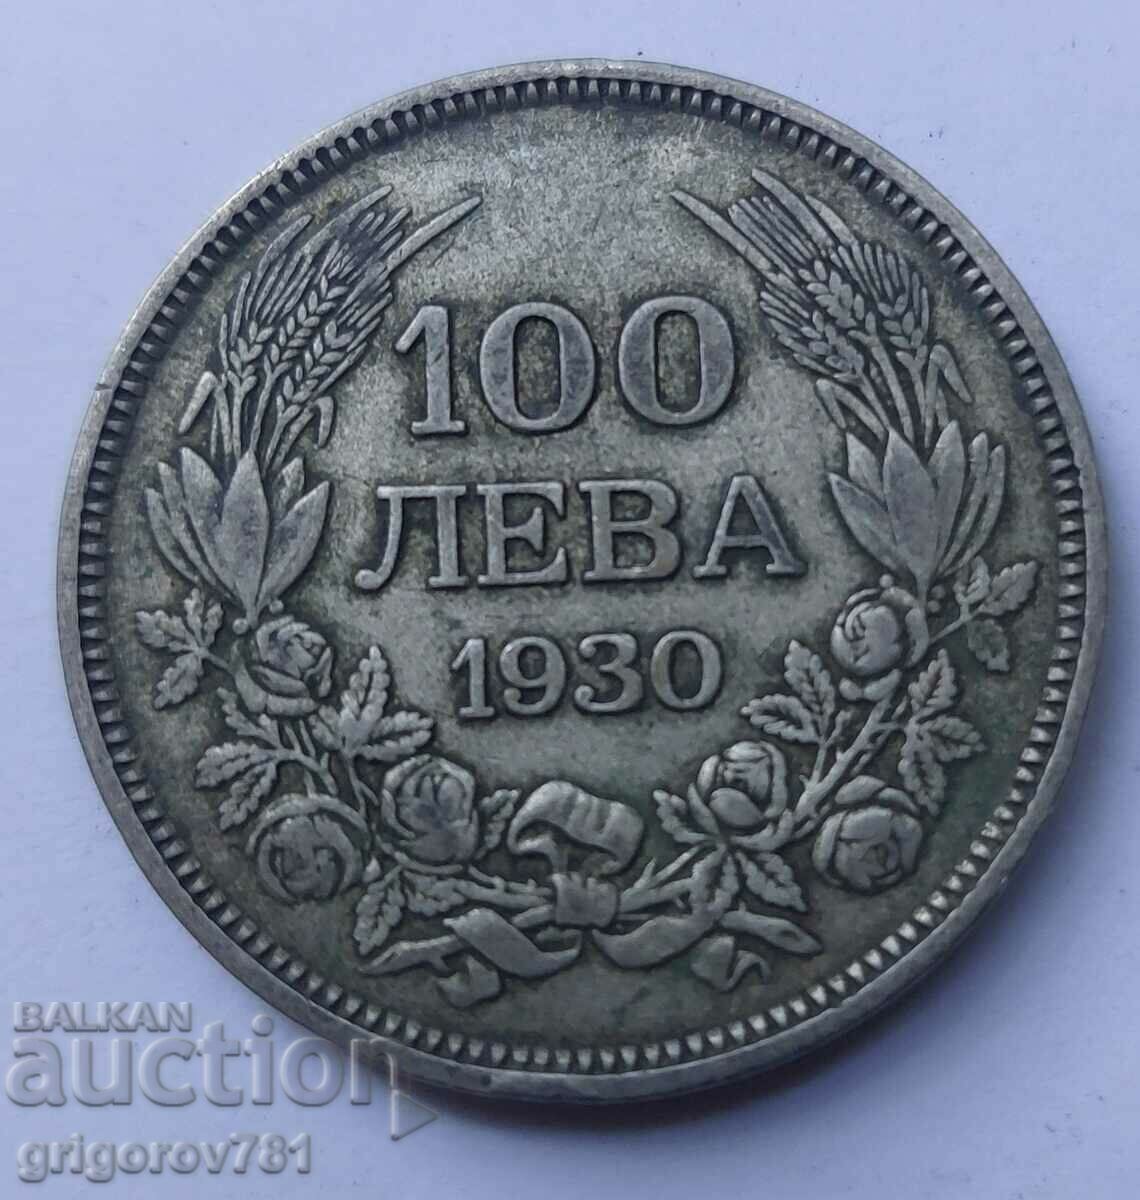 100 leva silver Bulgaria 1930 - silver coin #31